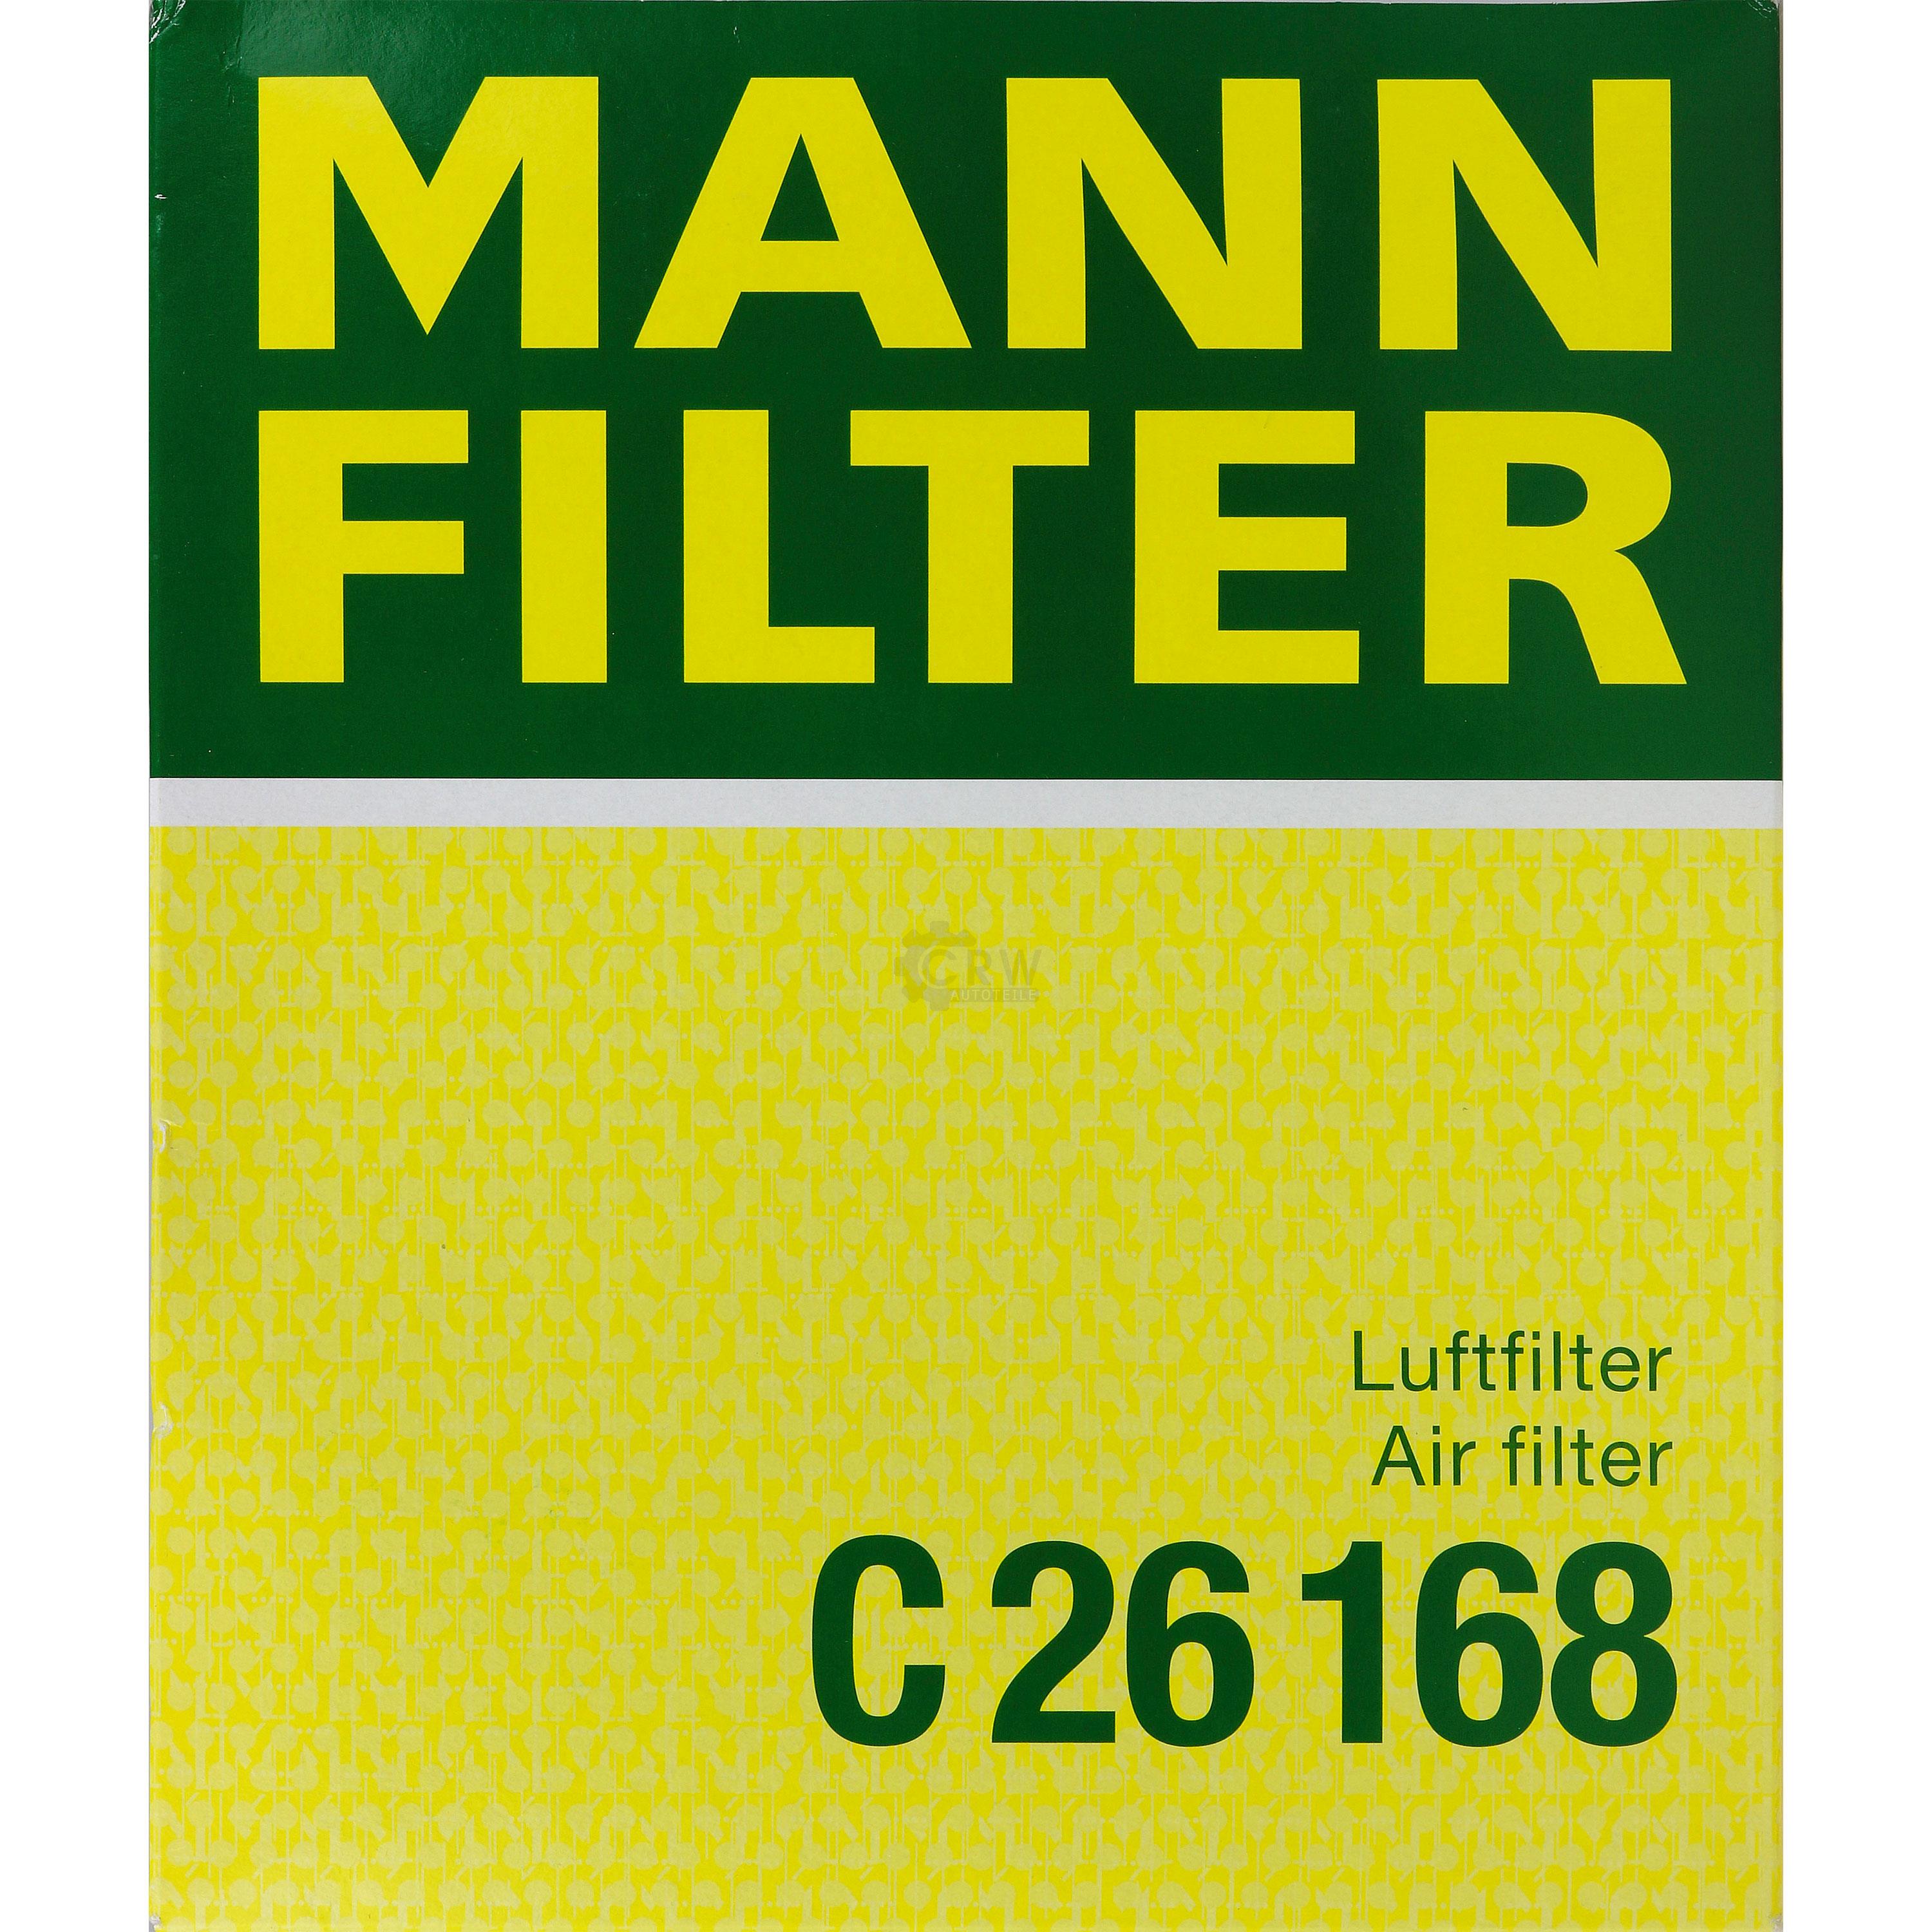 MANN-FILTER Luftfilter für Audi A4 8D2 B5 1.6 1.8 8D5 4B C5 2.4 VW Passat